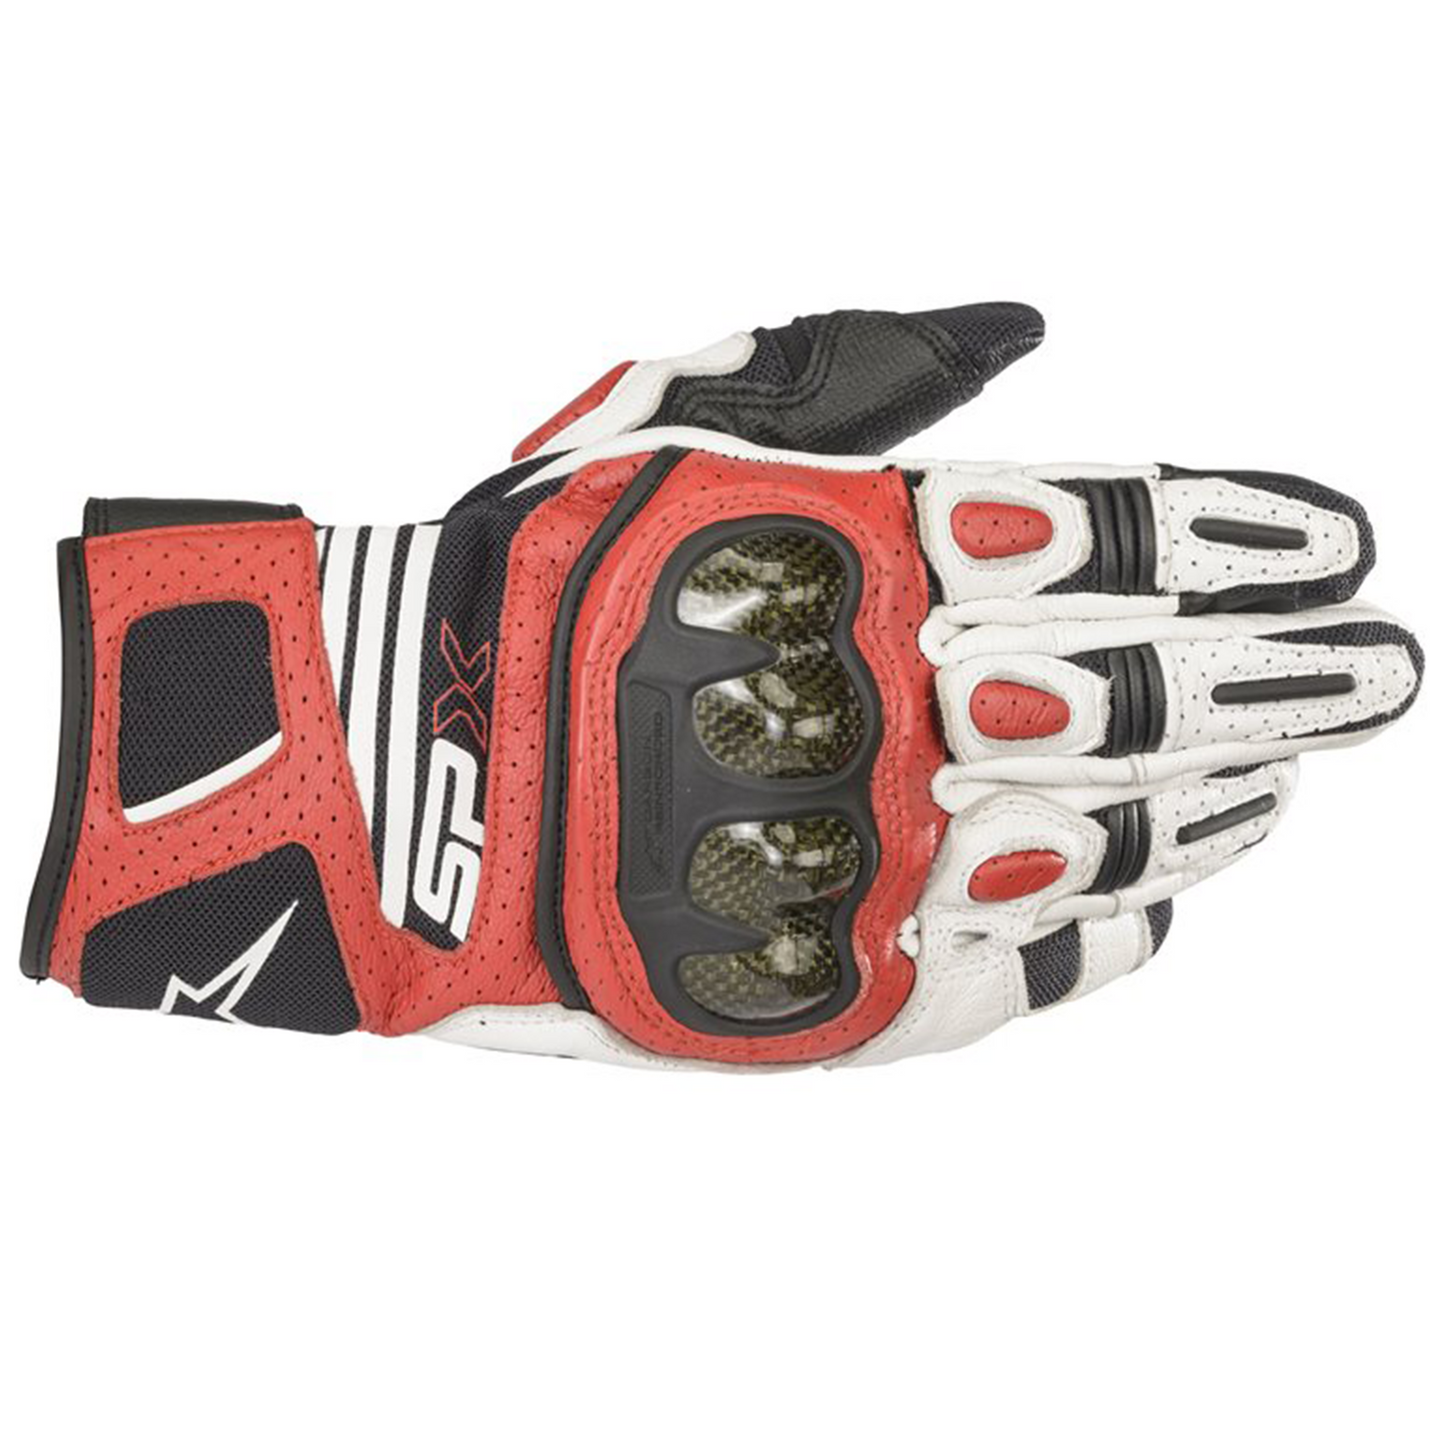 Alpinestars SP-X Air Carbon V2 Gloves - White/Black/Bright Red - (2030)